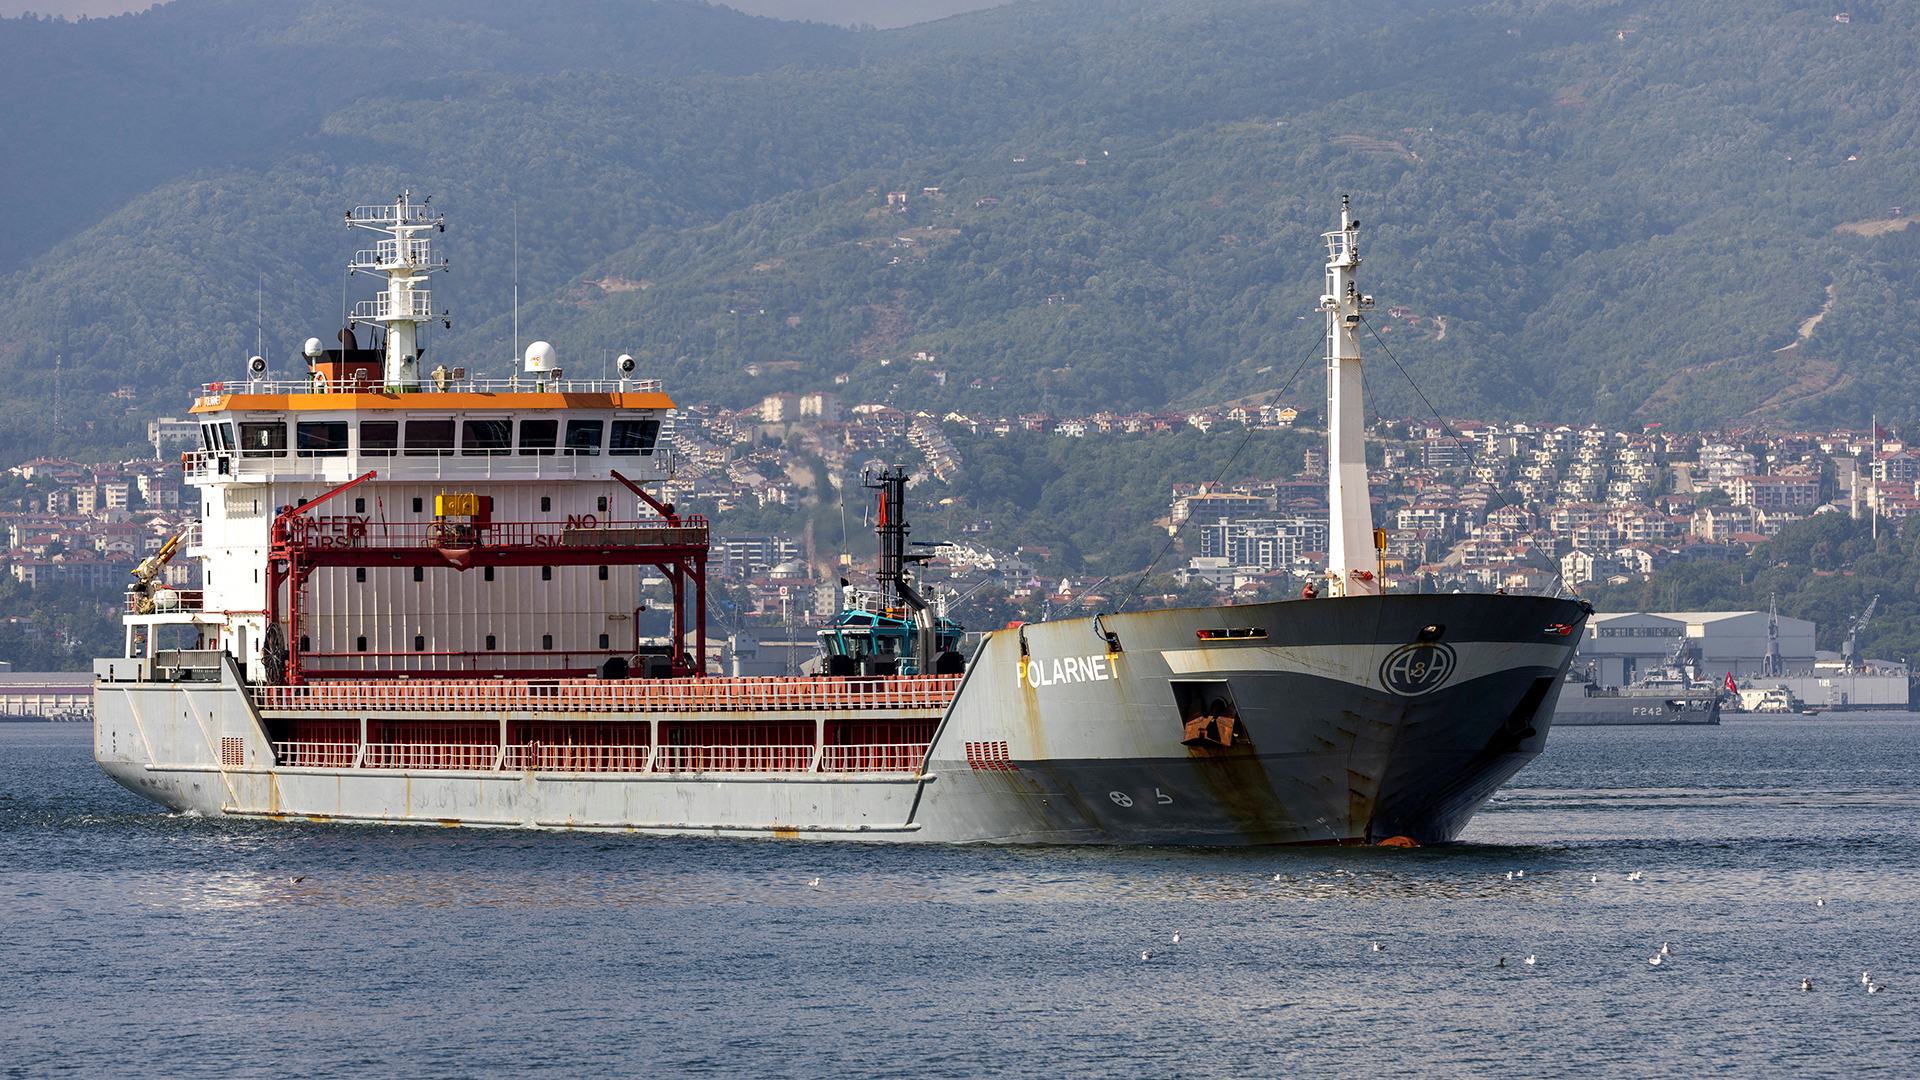 Der Frachter "Polarnet" vor der türkischen Küste im Marmarameer | REUTERS